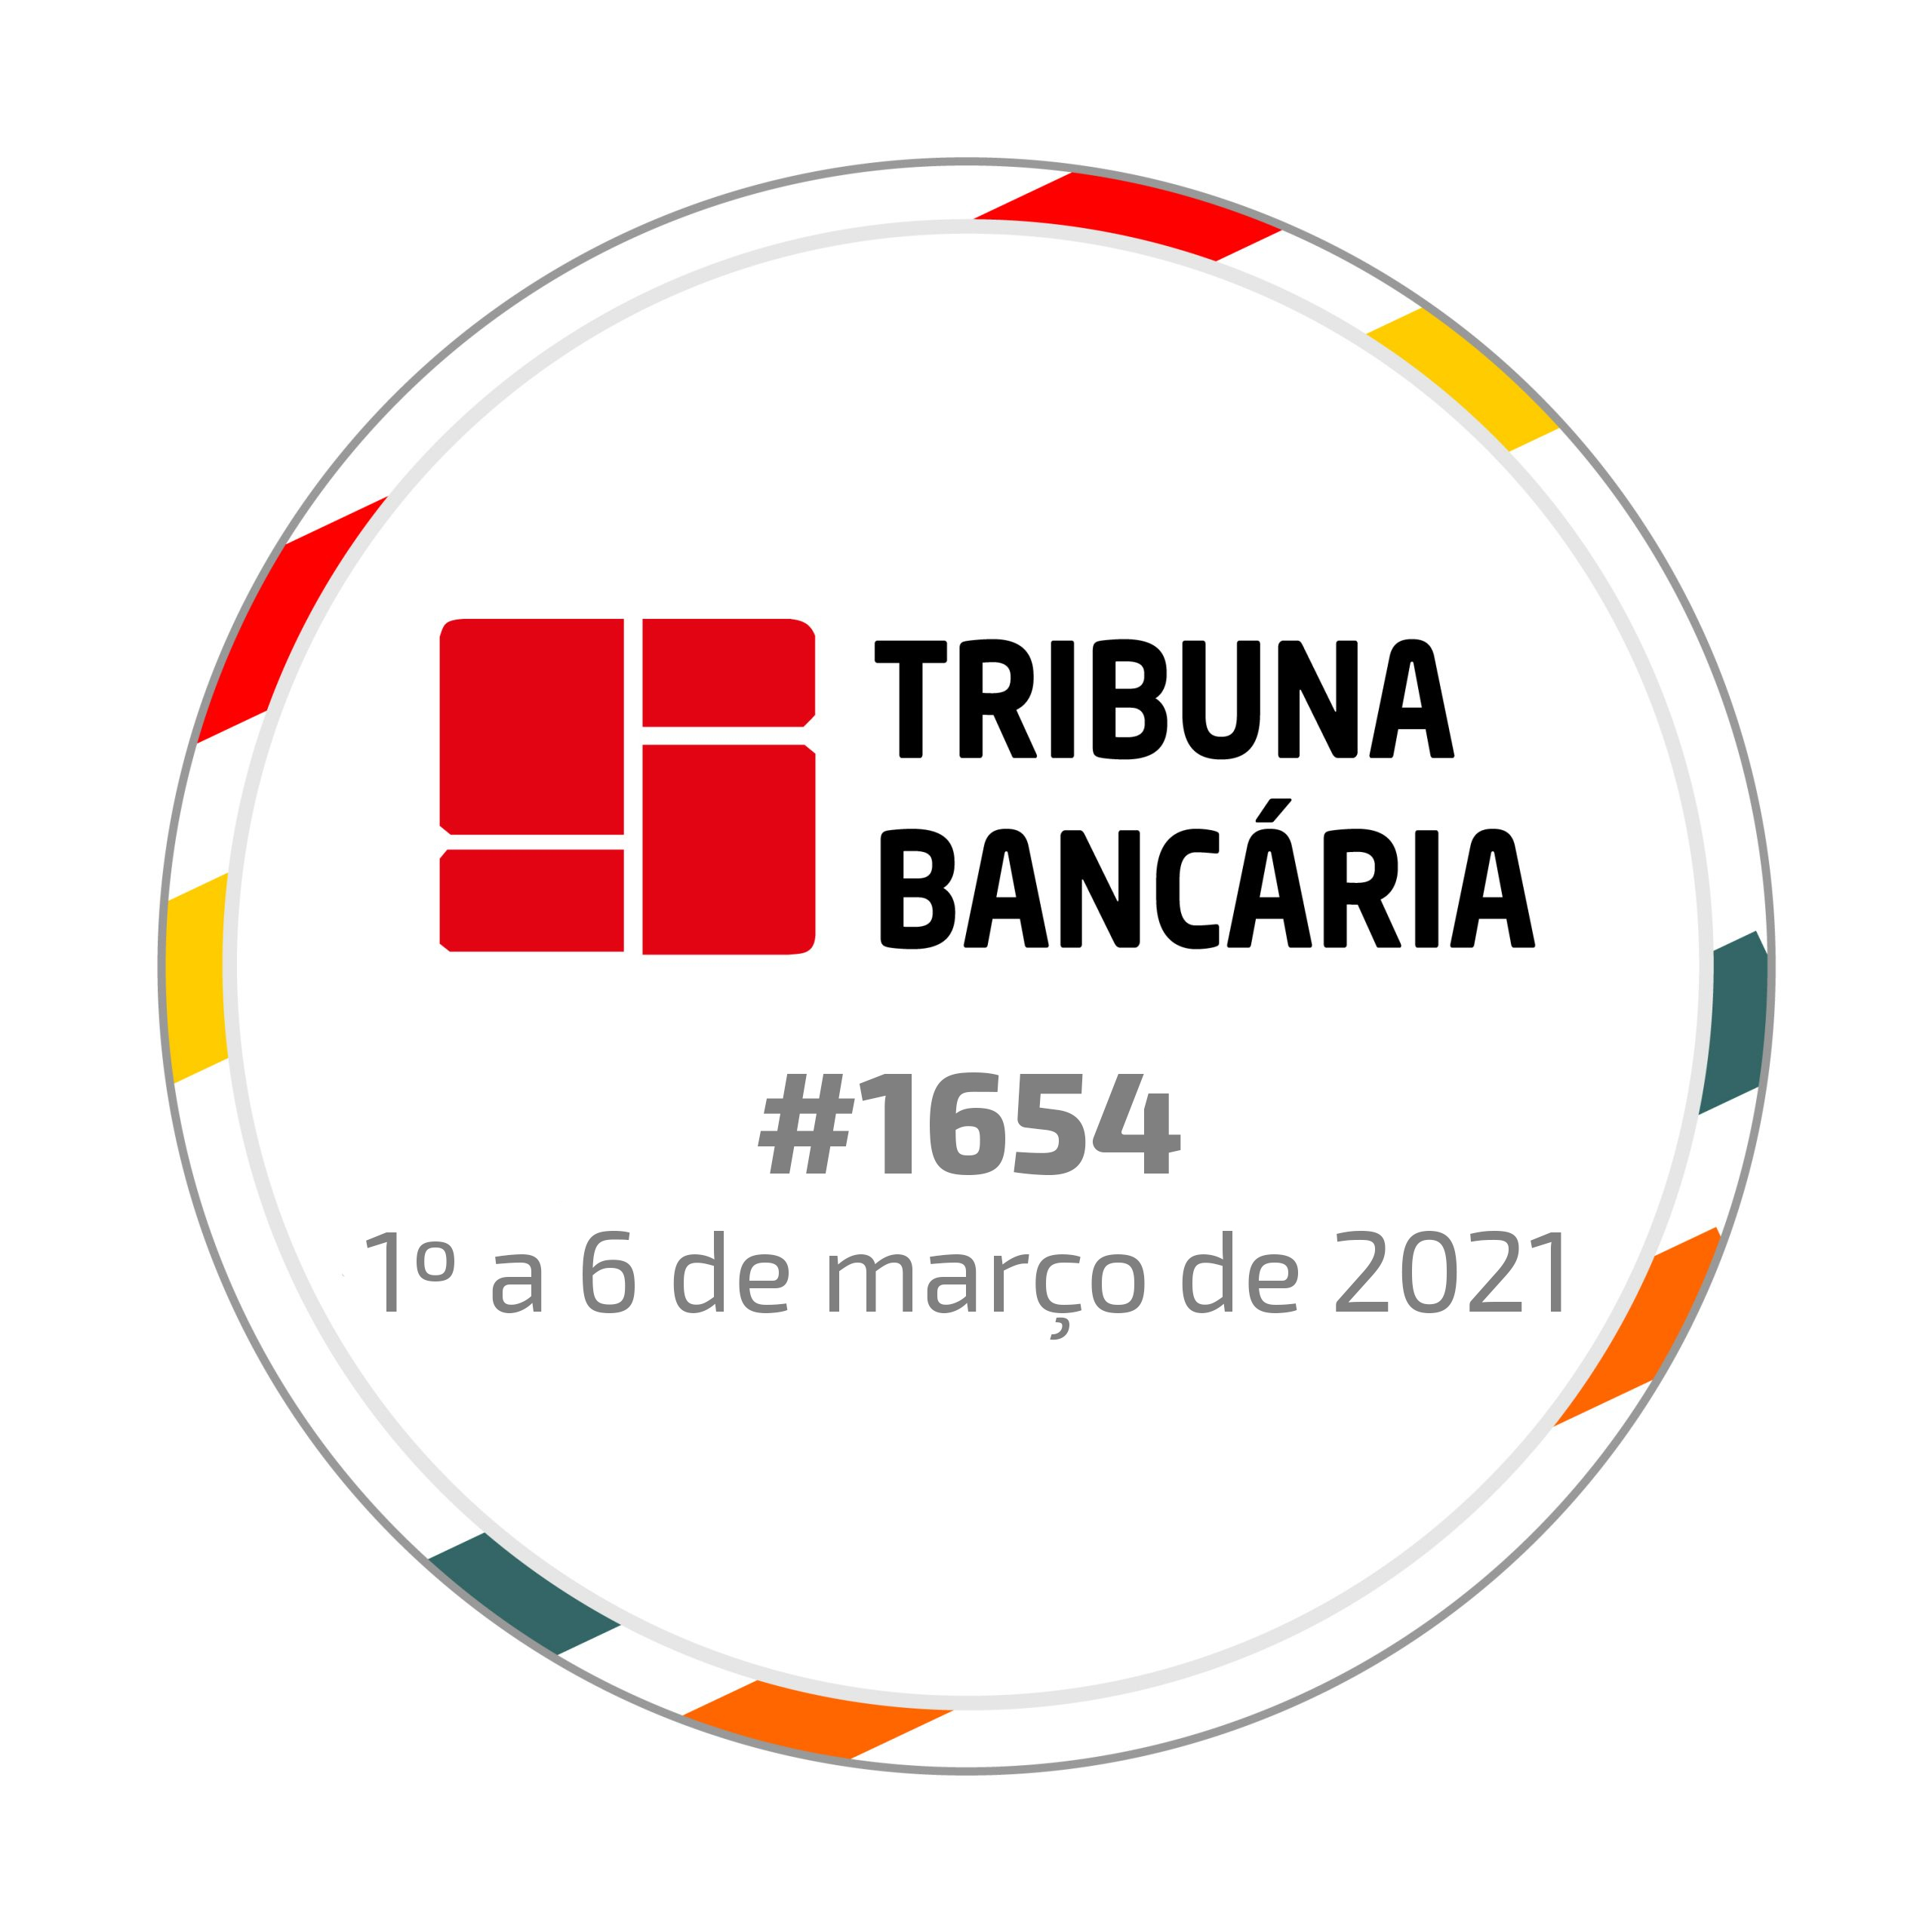 Tribuna Bancária 1654 | de 1º a 6 de março de 2021